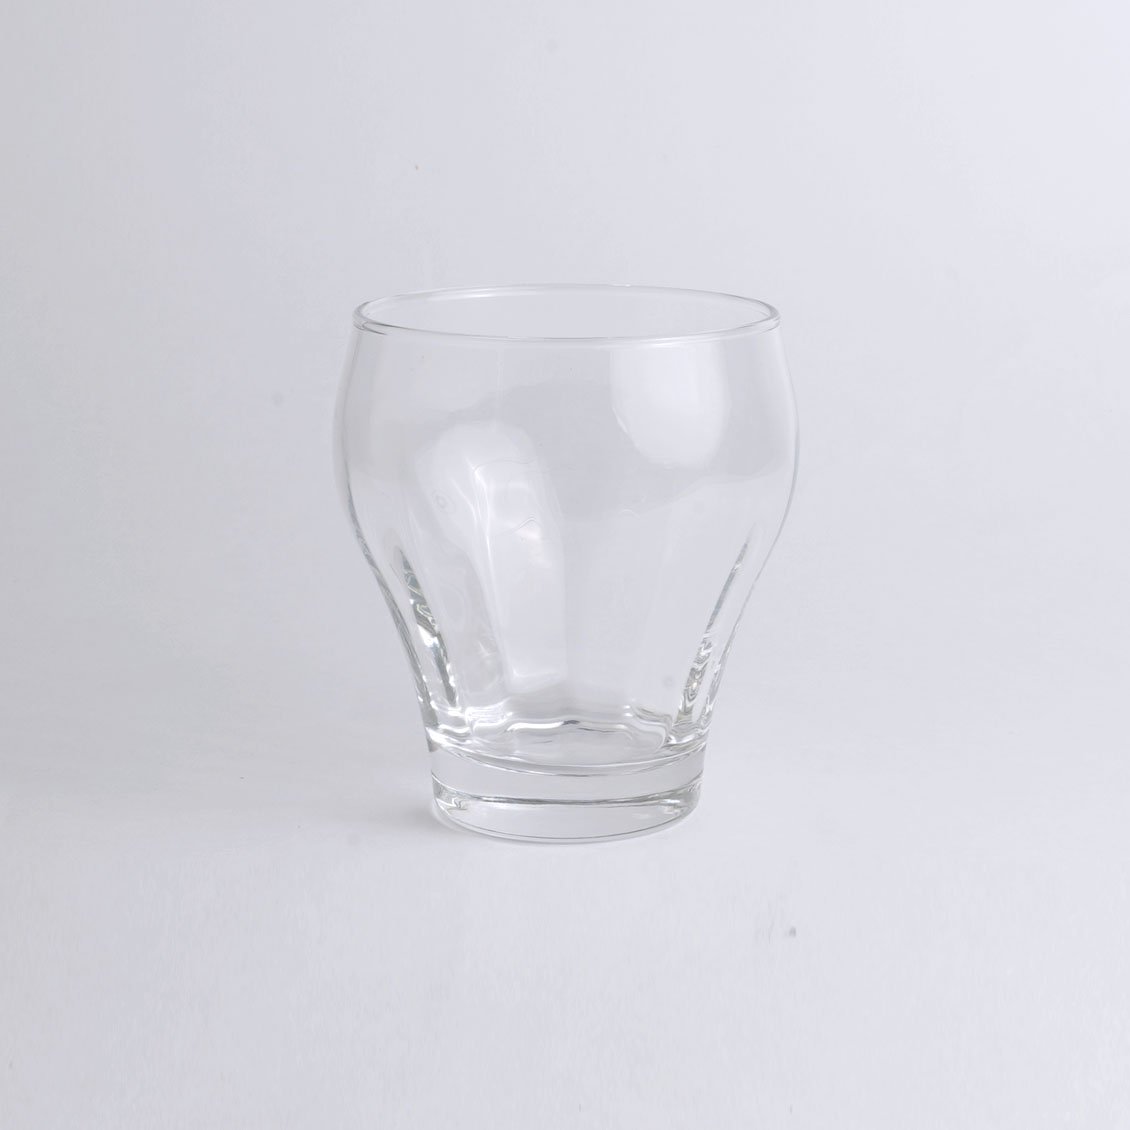 ナッセル ウォーターグラス 240ml | 食卓に輝きを与える可愛らしいグラス - Anchor Bridge アンカーブリッジ ONLINE  STORE | テーブルウェア インテリア